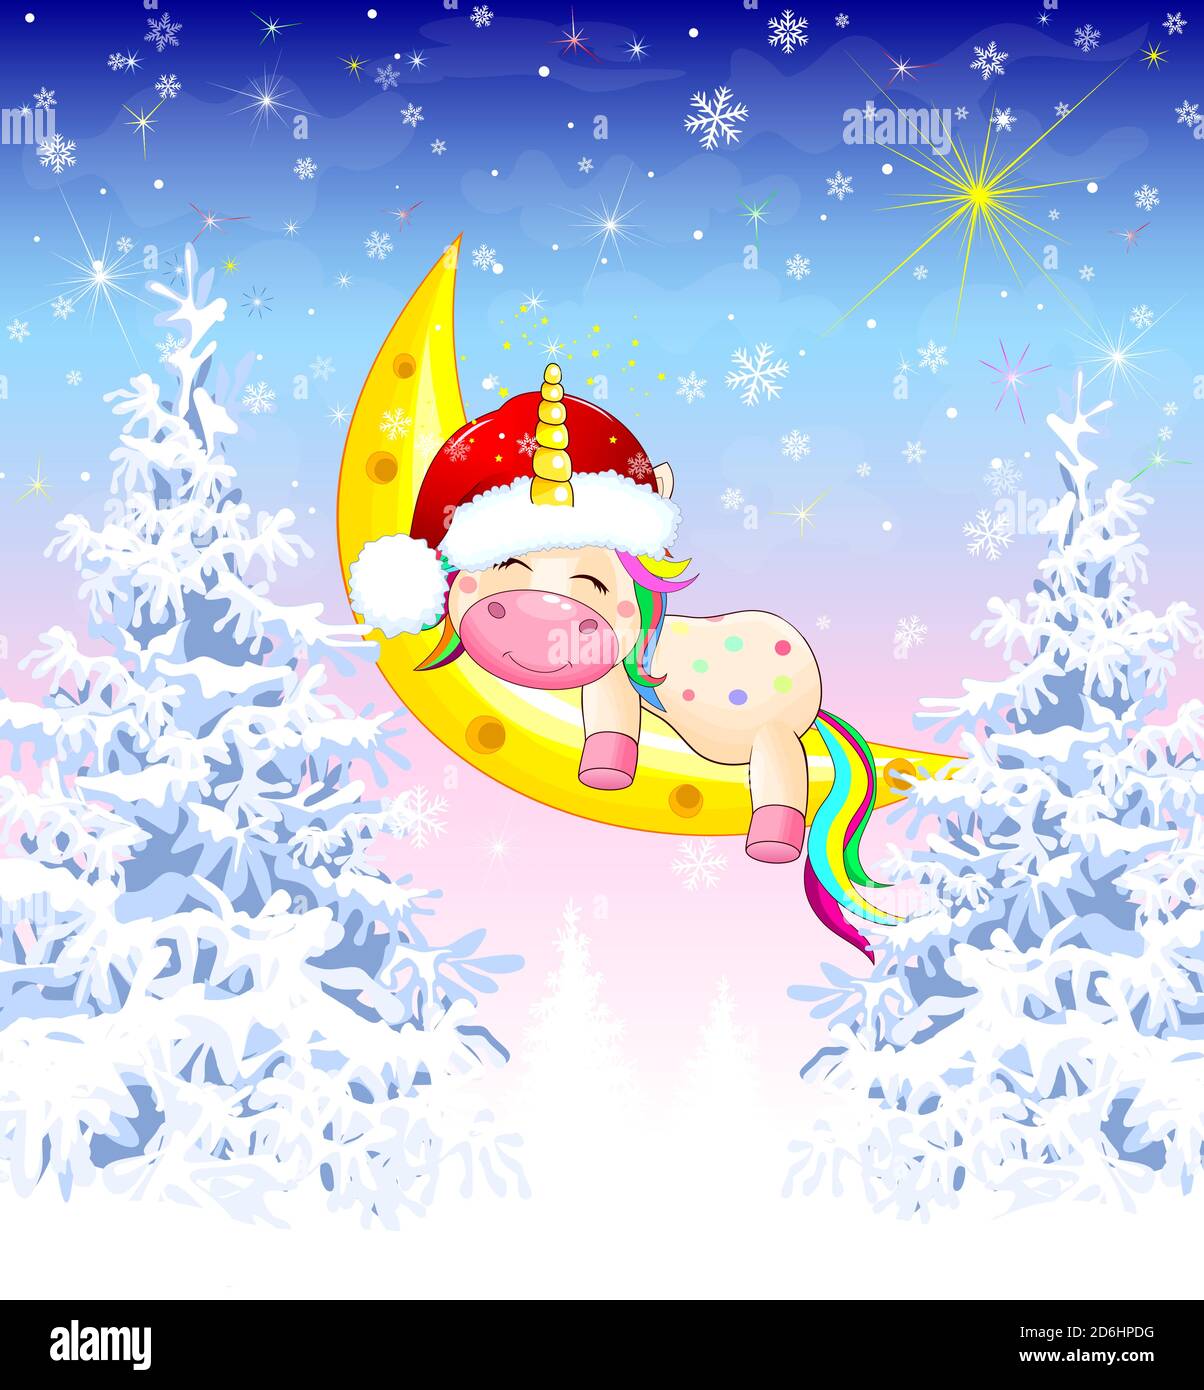 Un piccolo unicorno, vestito con un cappello di Santa, dorme sulla luna, sullo sfondo di una foresta invernale. Illustrazione Vettoriale